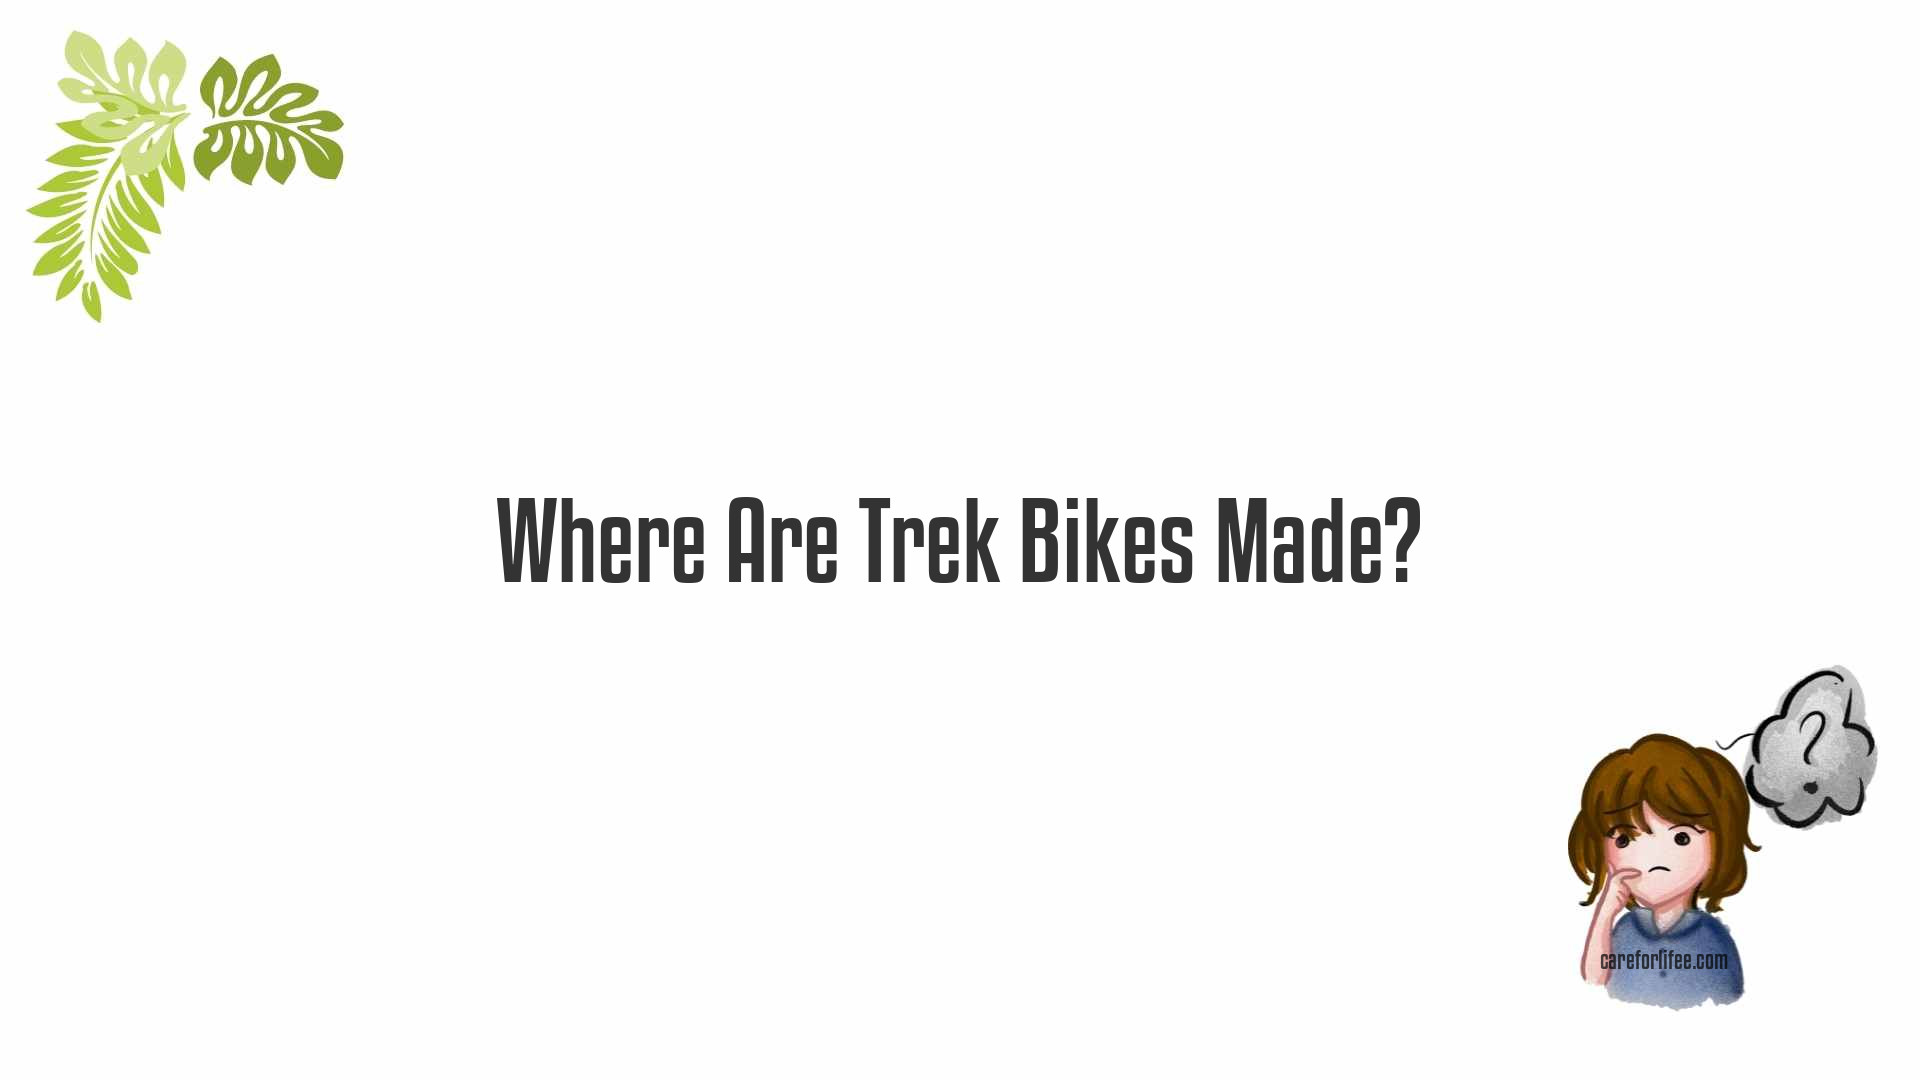 Where Are Trek Bikes Made?